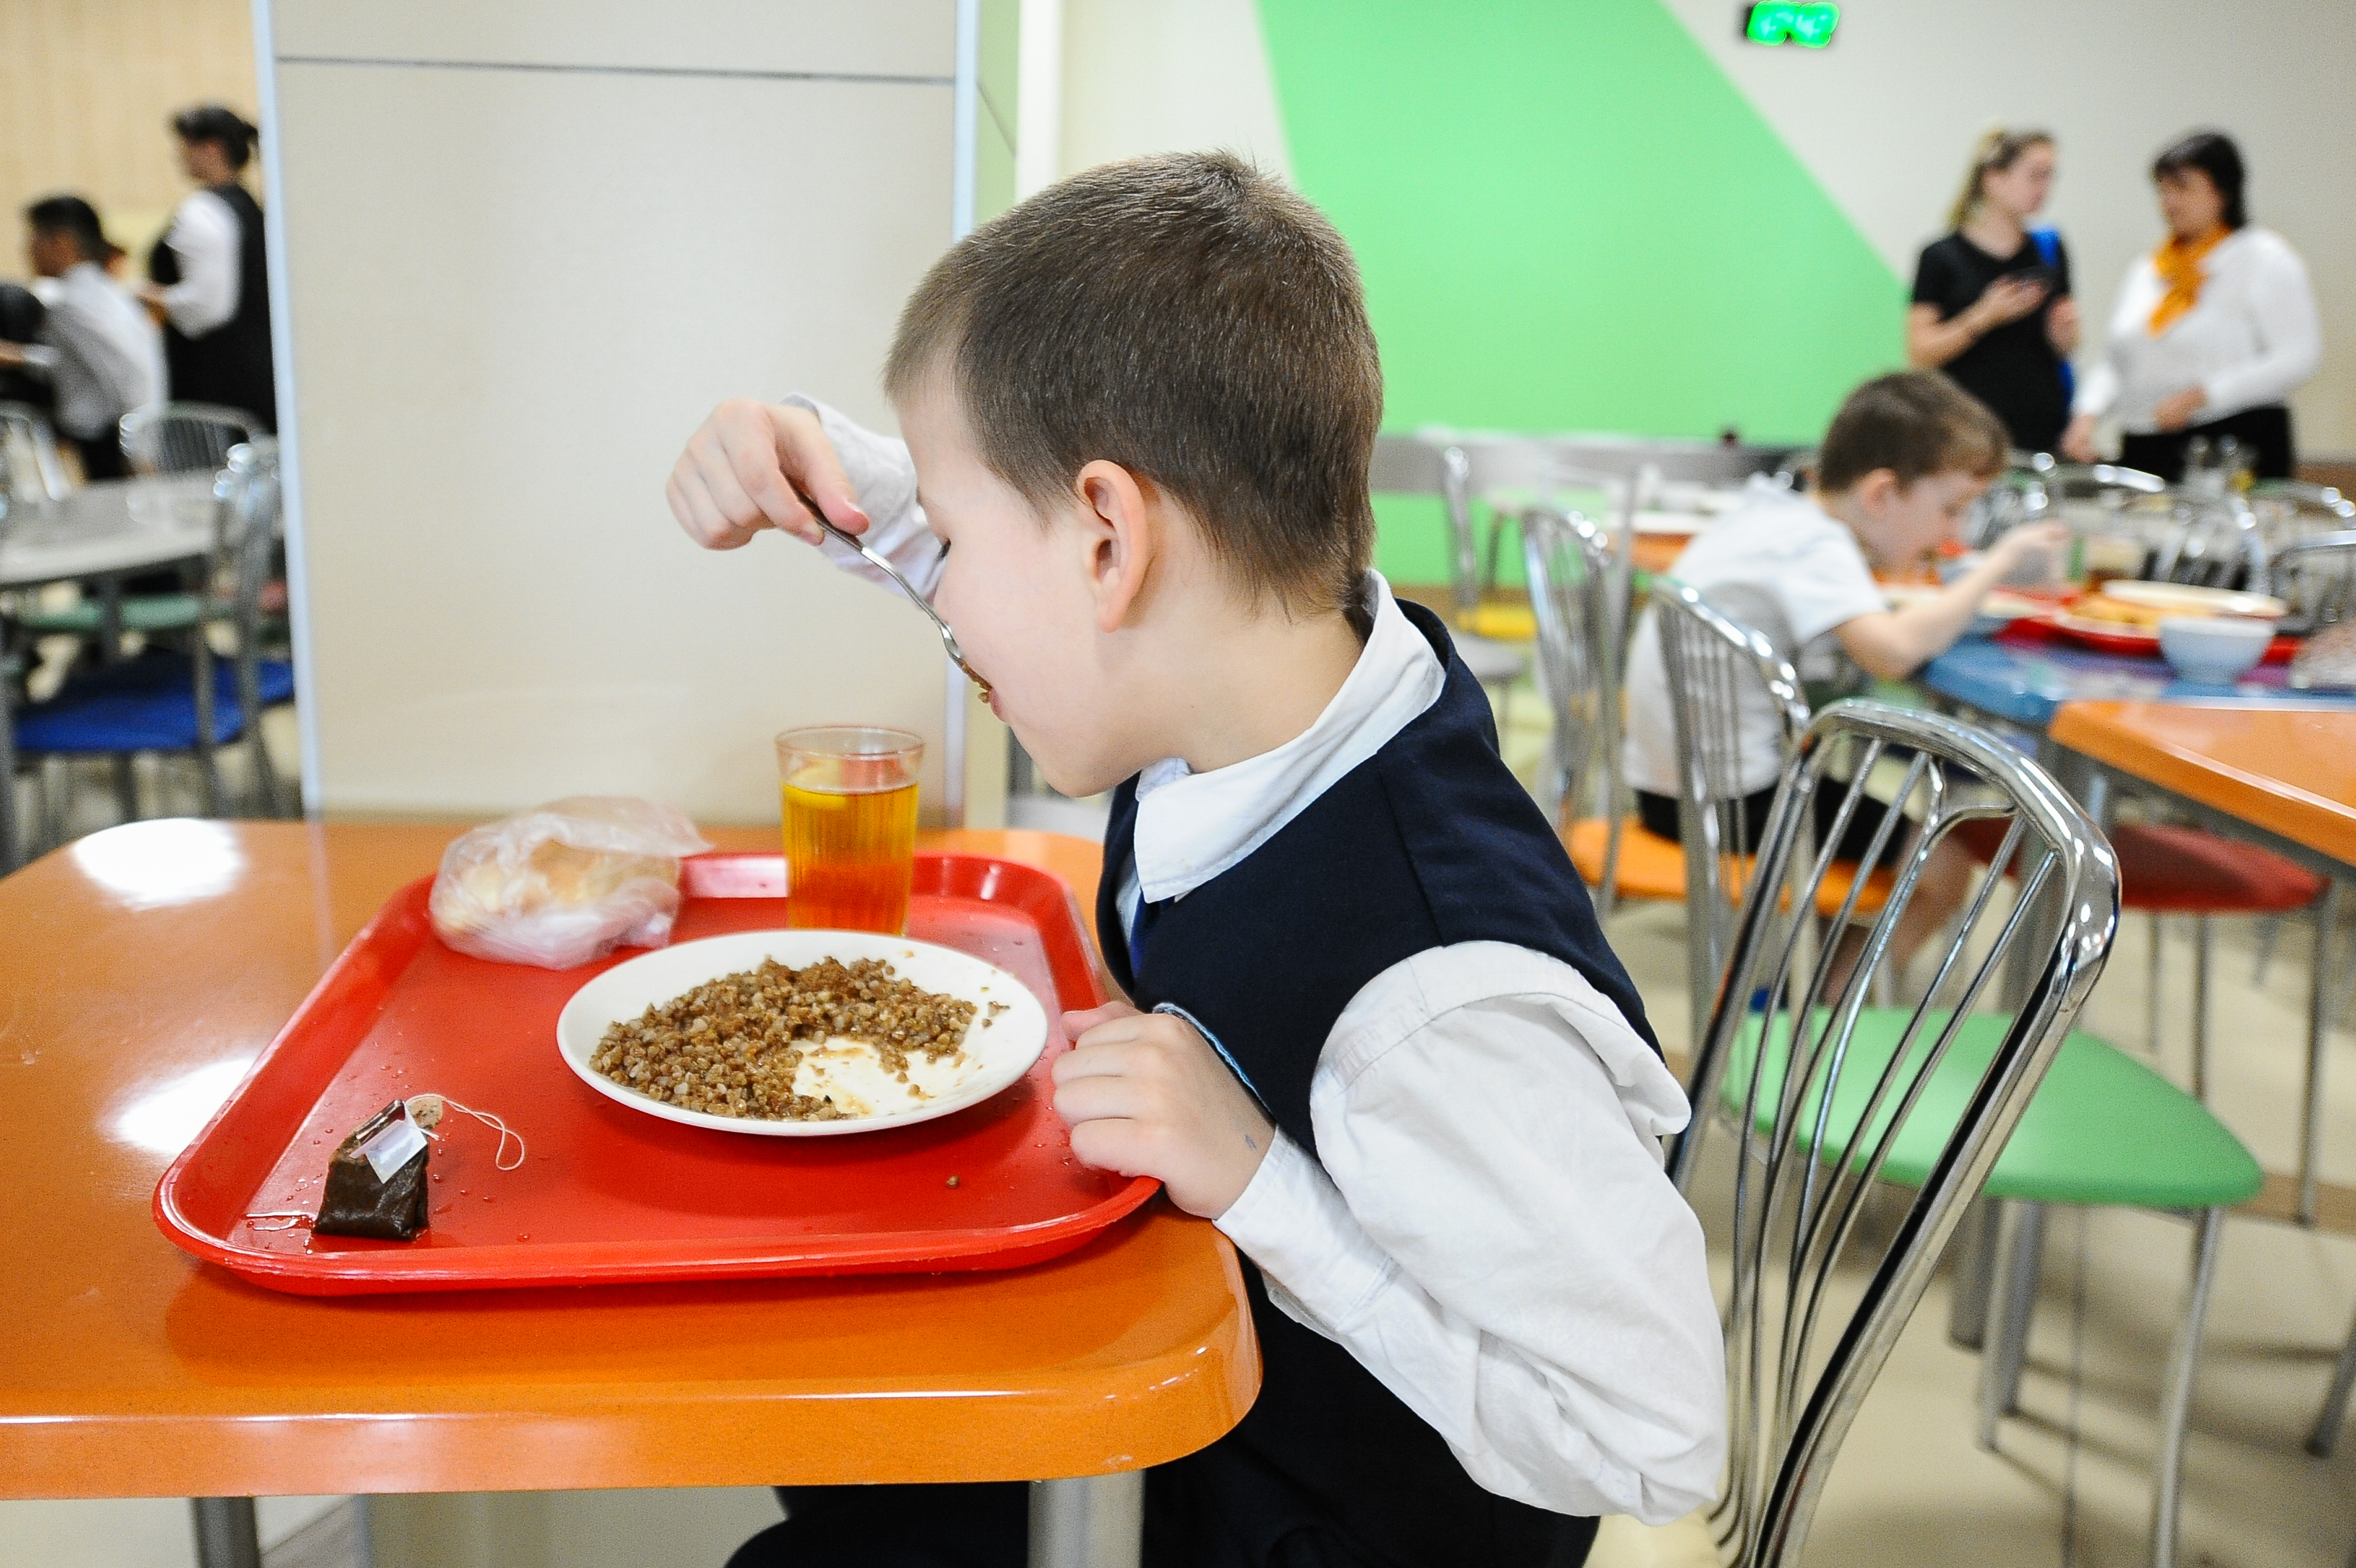 Ребенок овз питание в школе. Обед в школе. Питание в школе. Дети в столовой. Обед в школьной столовой.